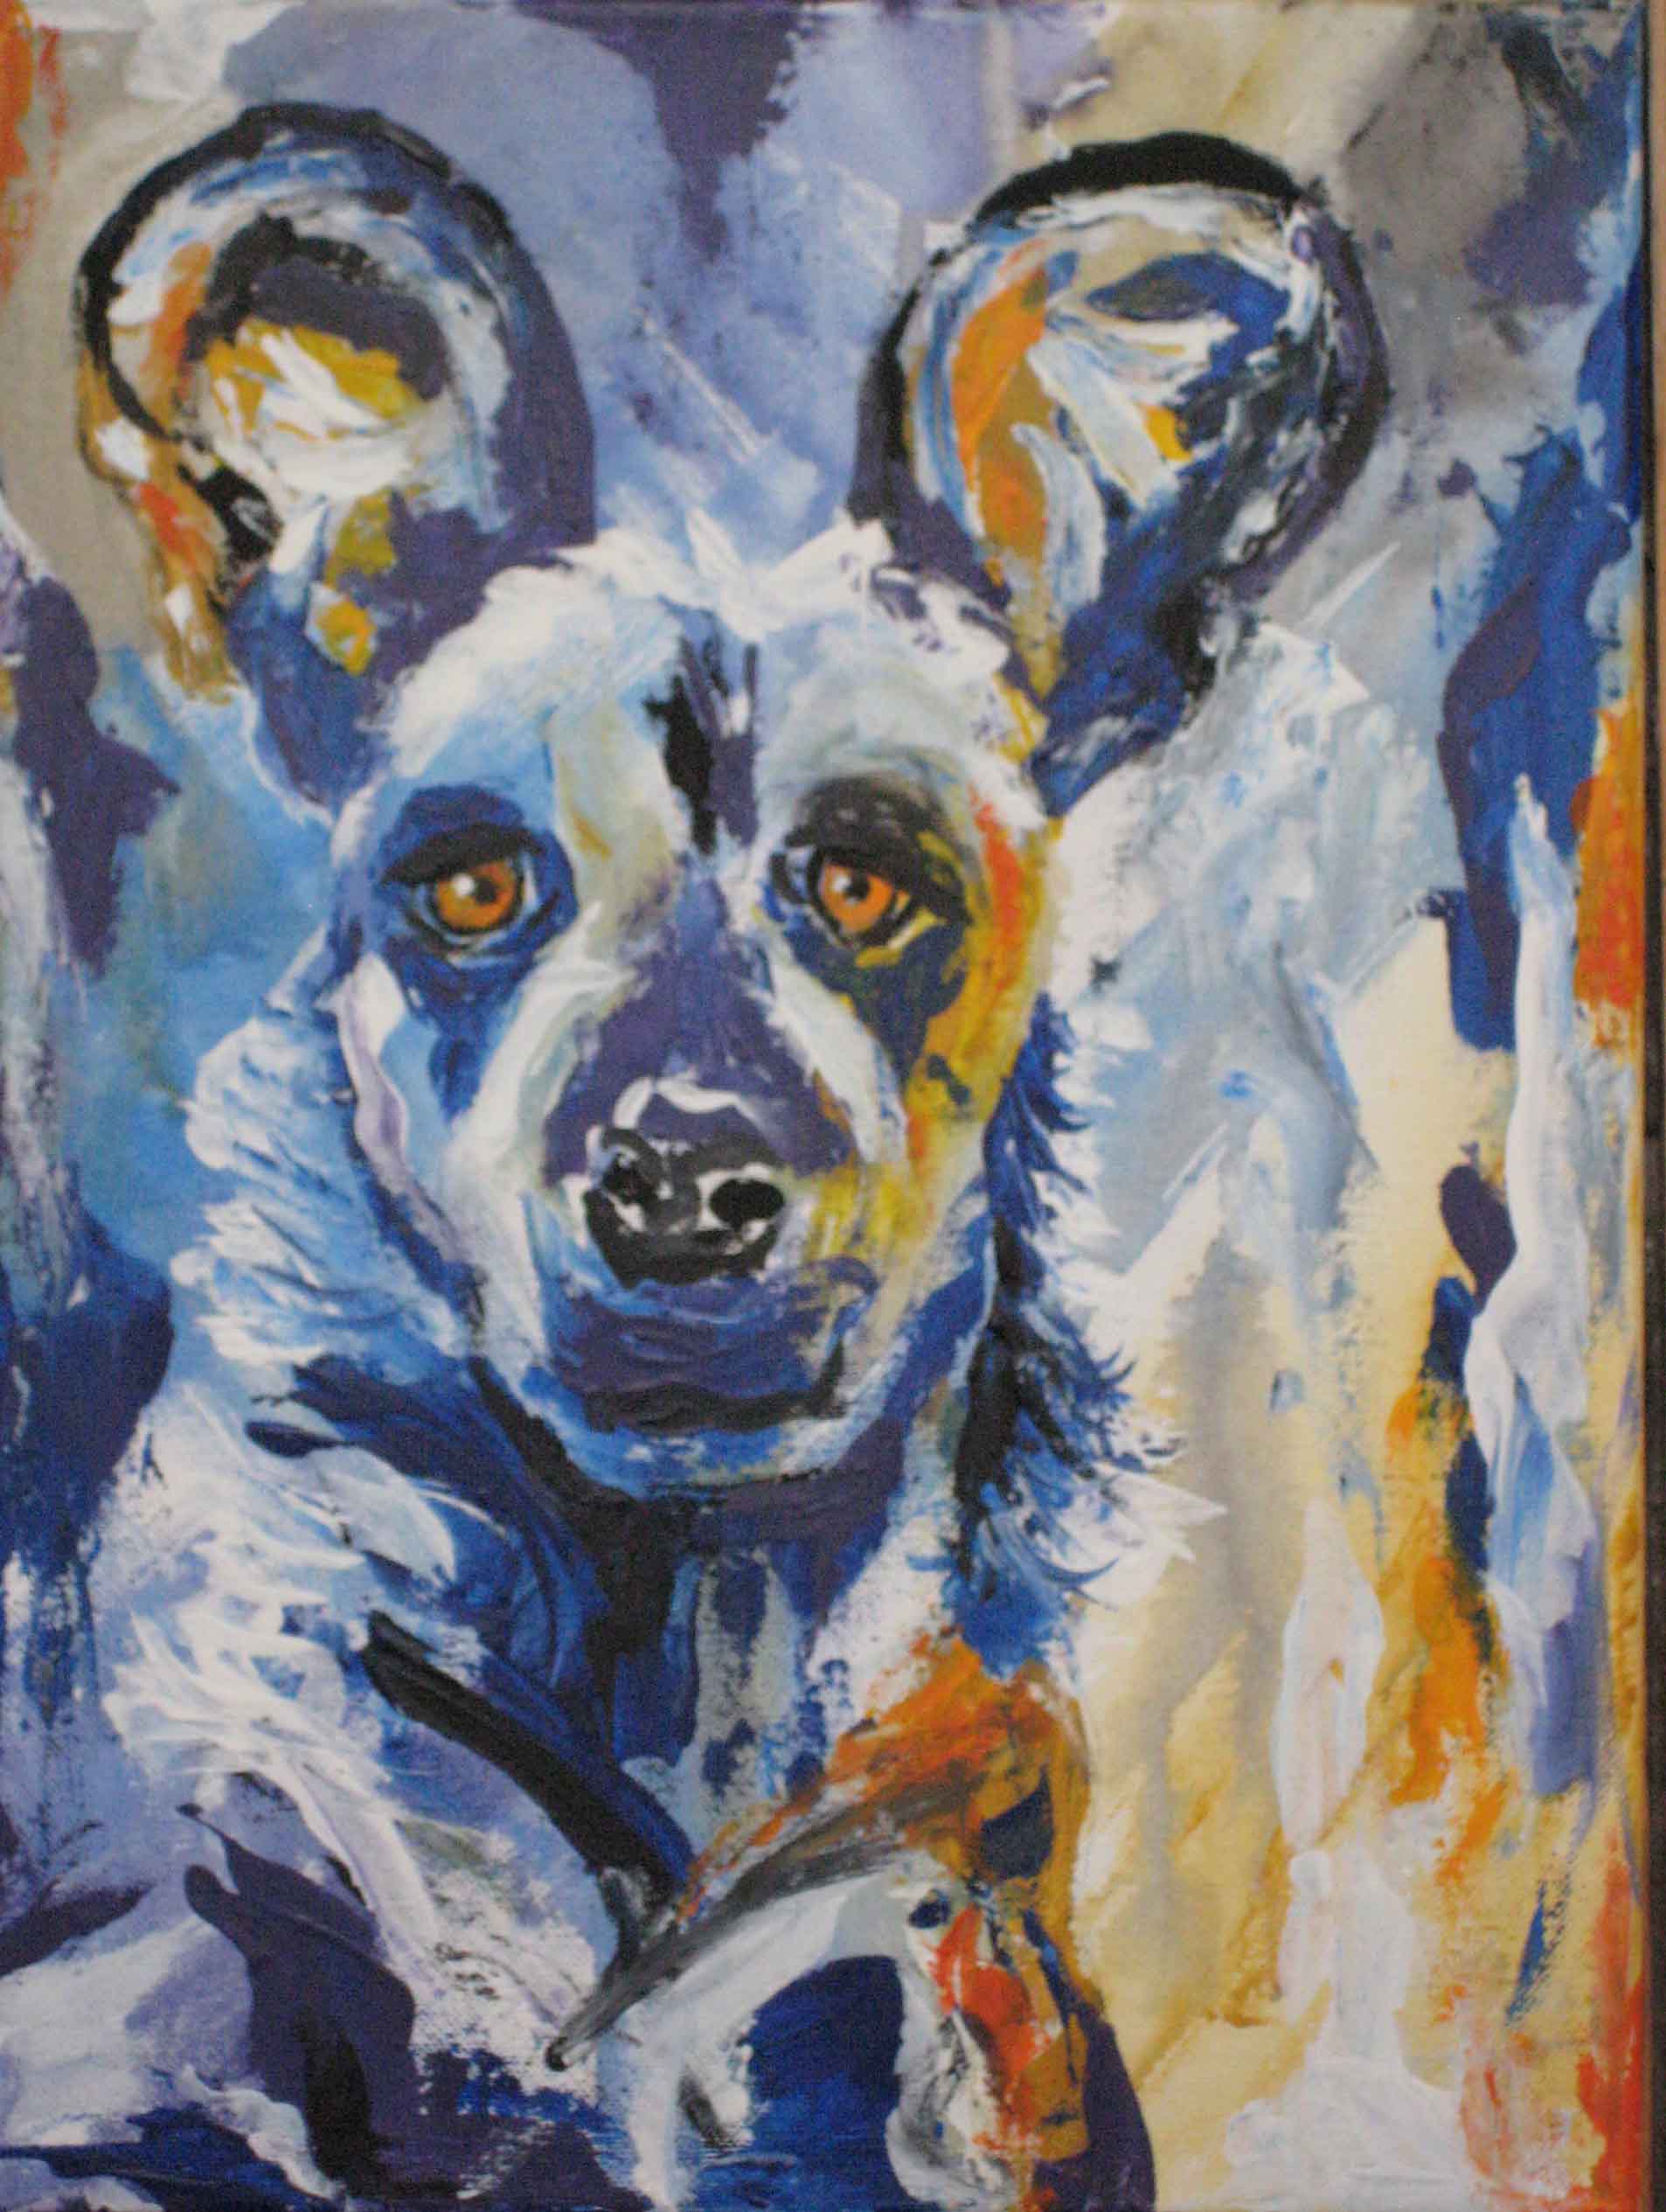 Ears, Wild dog, Acrylic on canvas, 30 x 40 cm - Copy.jpg